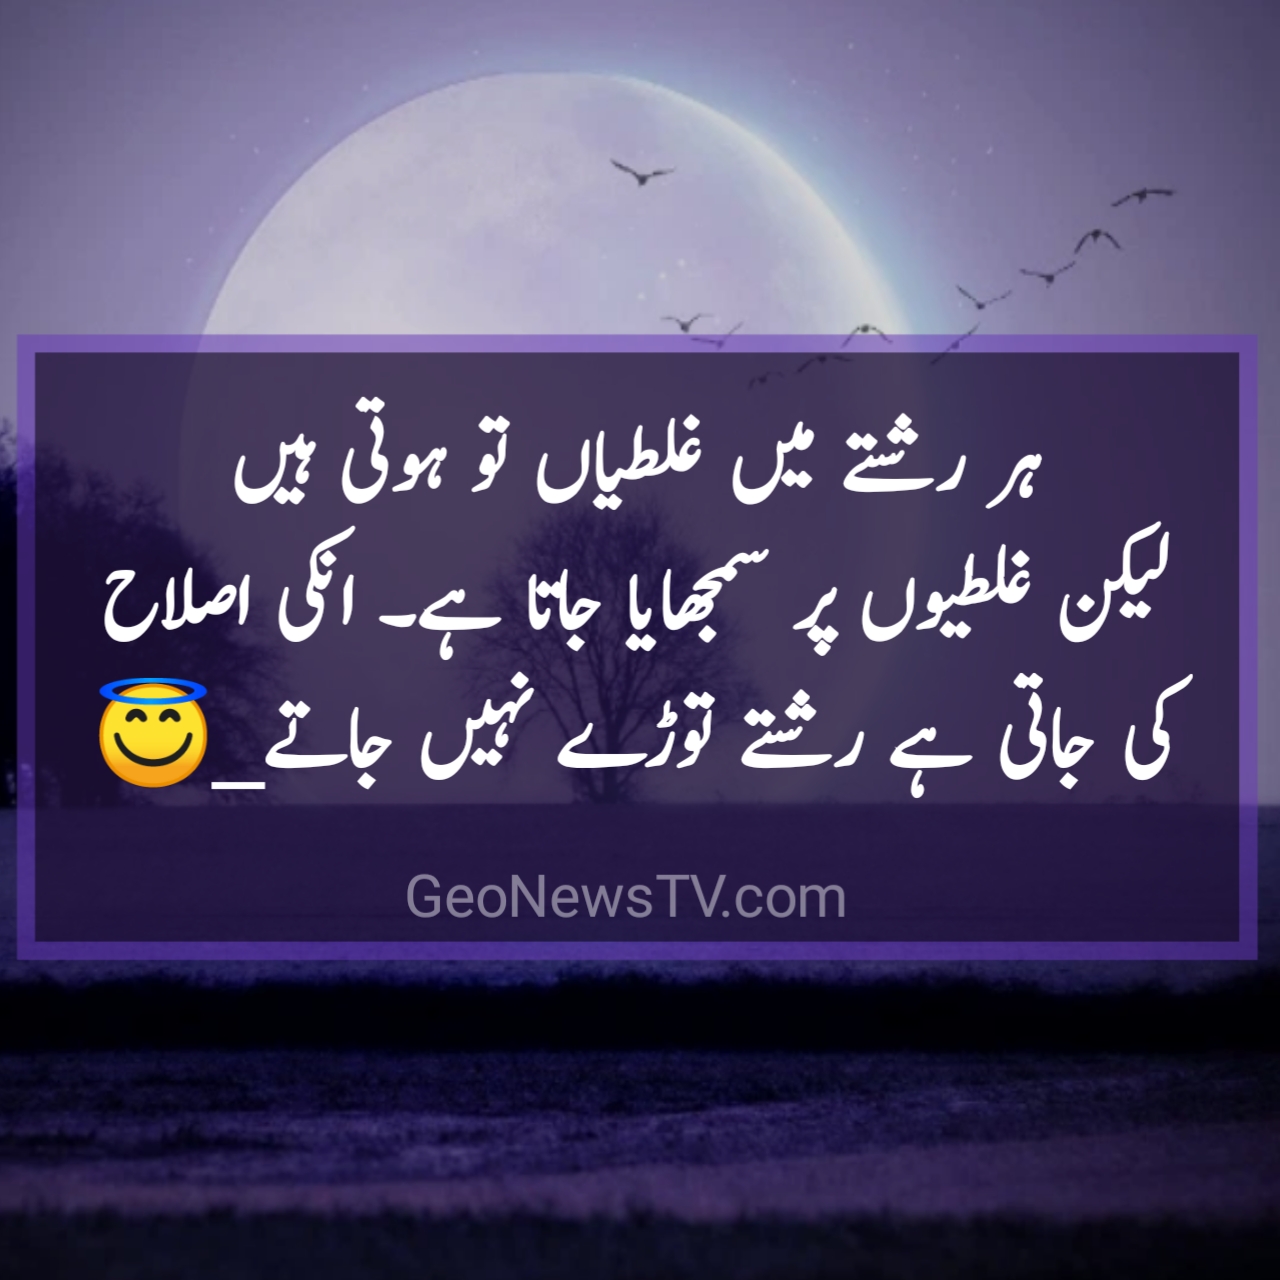 Urdu quotes- Amazing quotes- Qoutes in urdu- Amazing quotes in hindi |